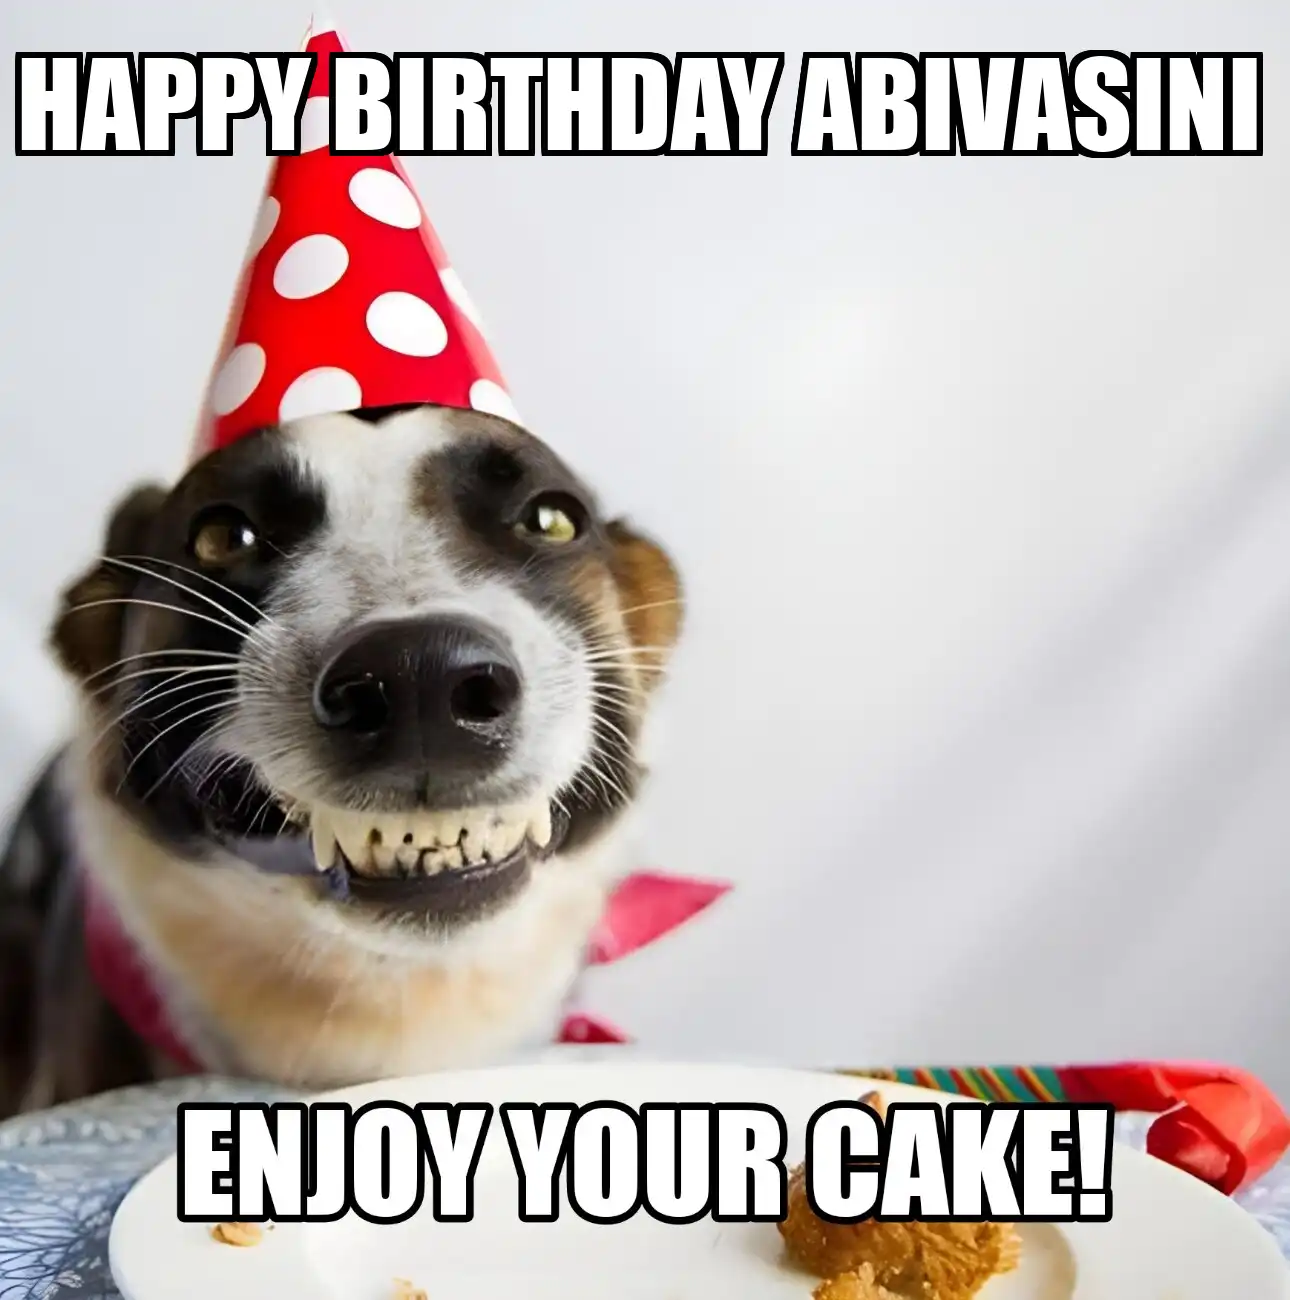 Happy Birthday Abivasini Enjoy Your Cake Dog Meme